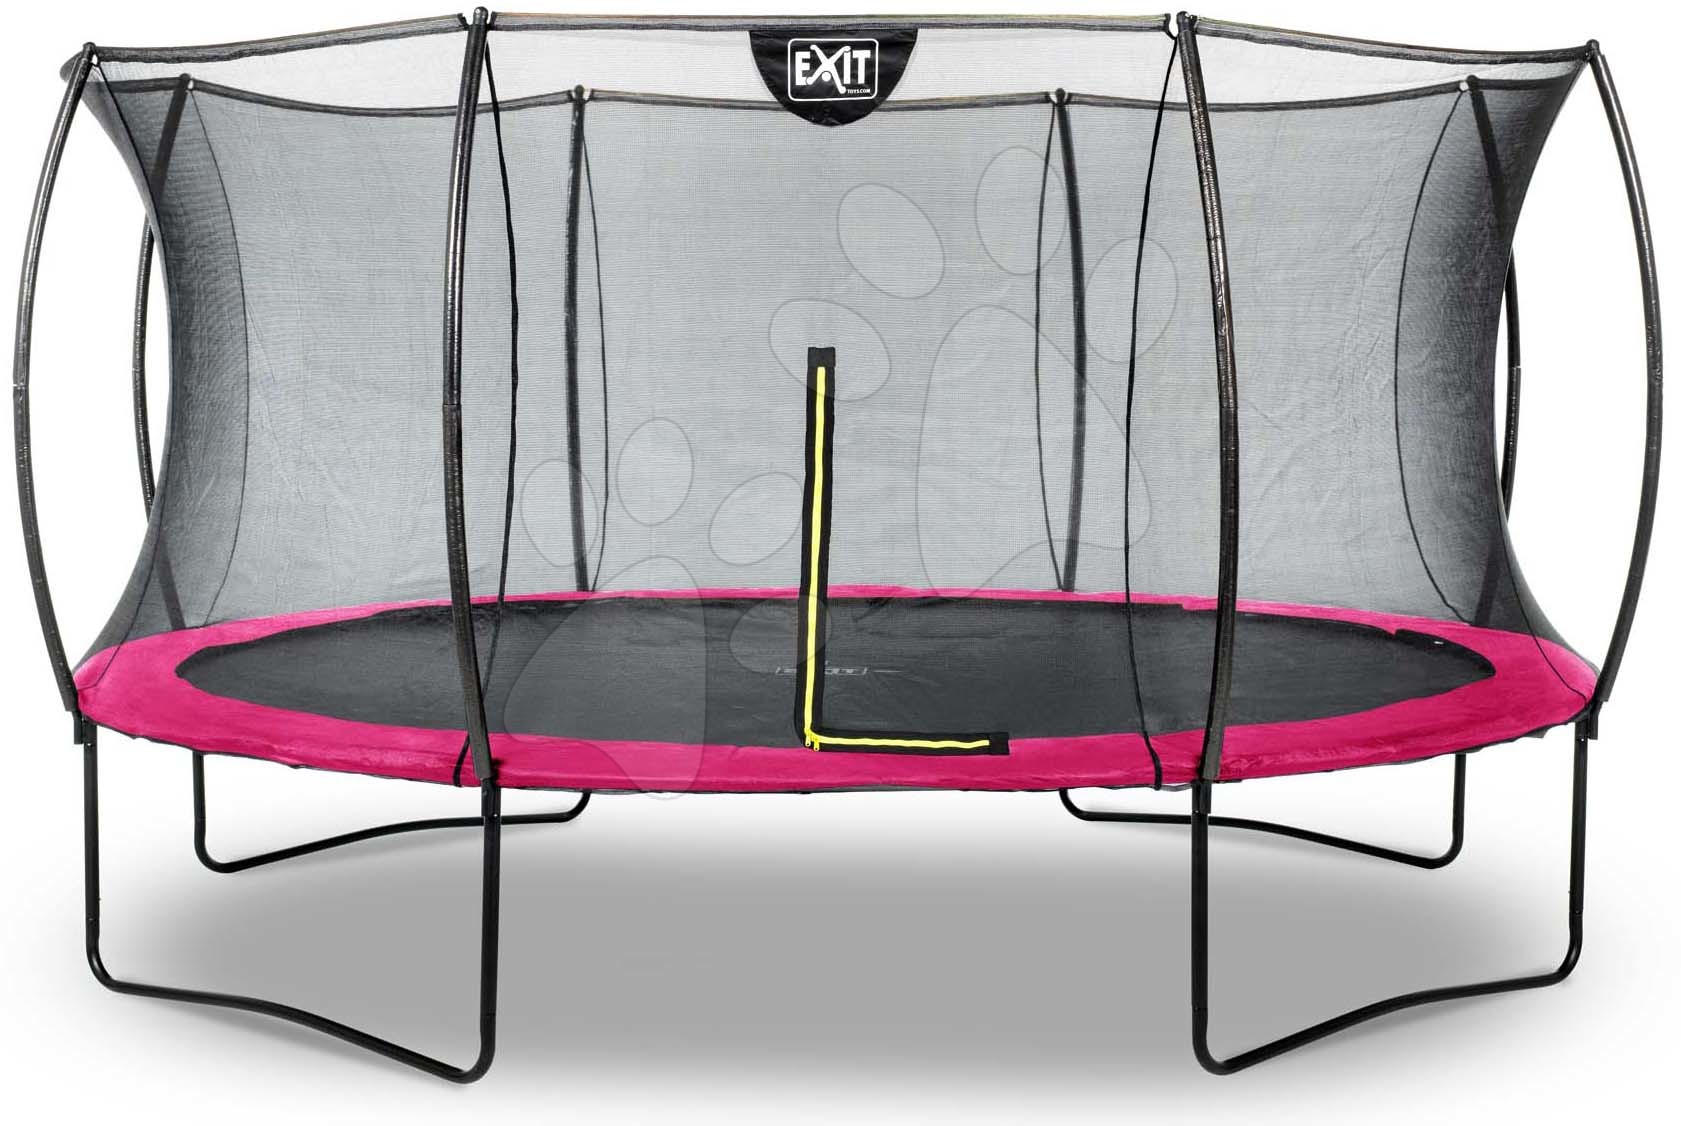 Trampolína s ochrannou sieťou Silhouette trampoline Pink Exit Toys okrúhla priemer 427 cm ružová